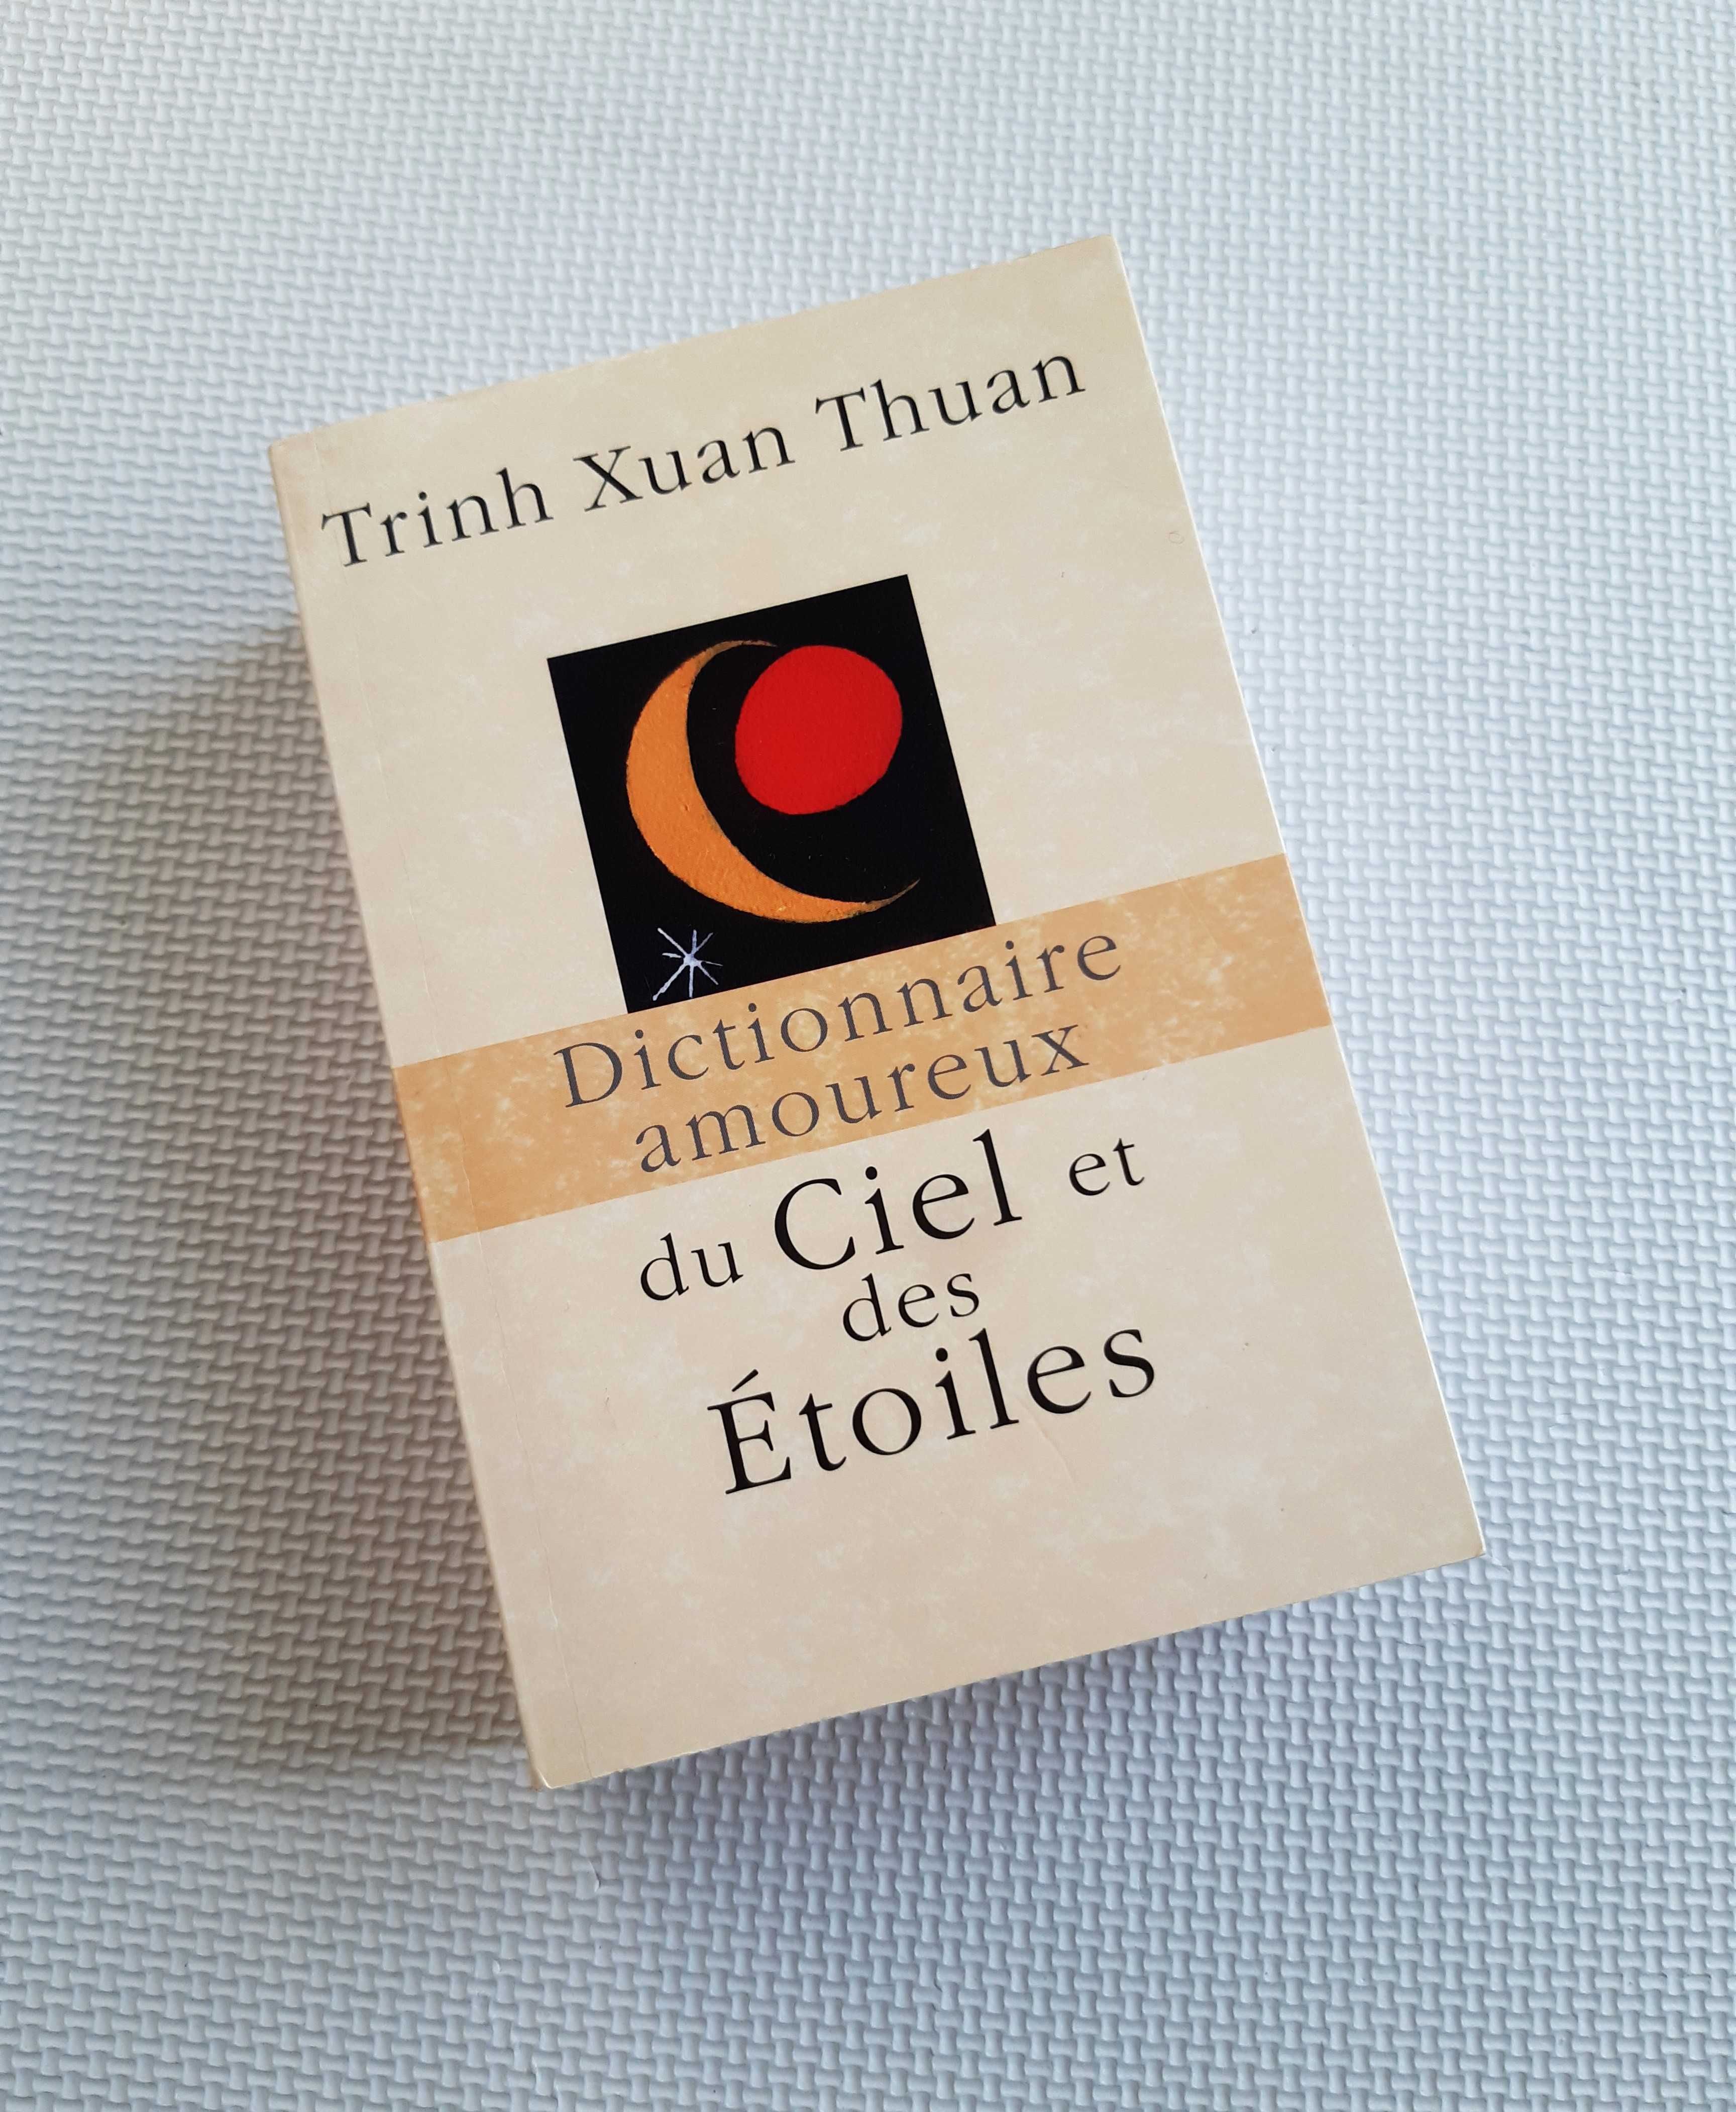 Dictionnaire amoureux du Ciel et des Etoiles Trinh Xuan Thuan